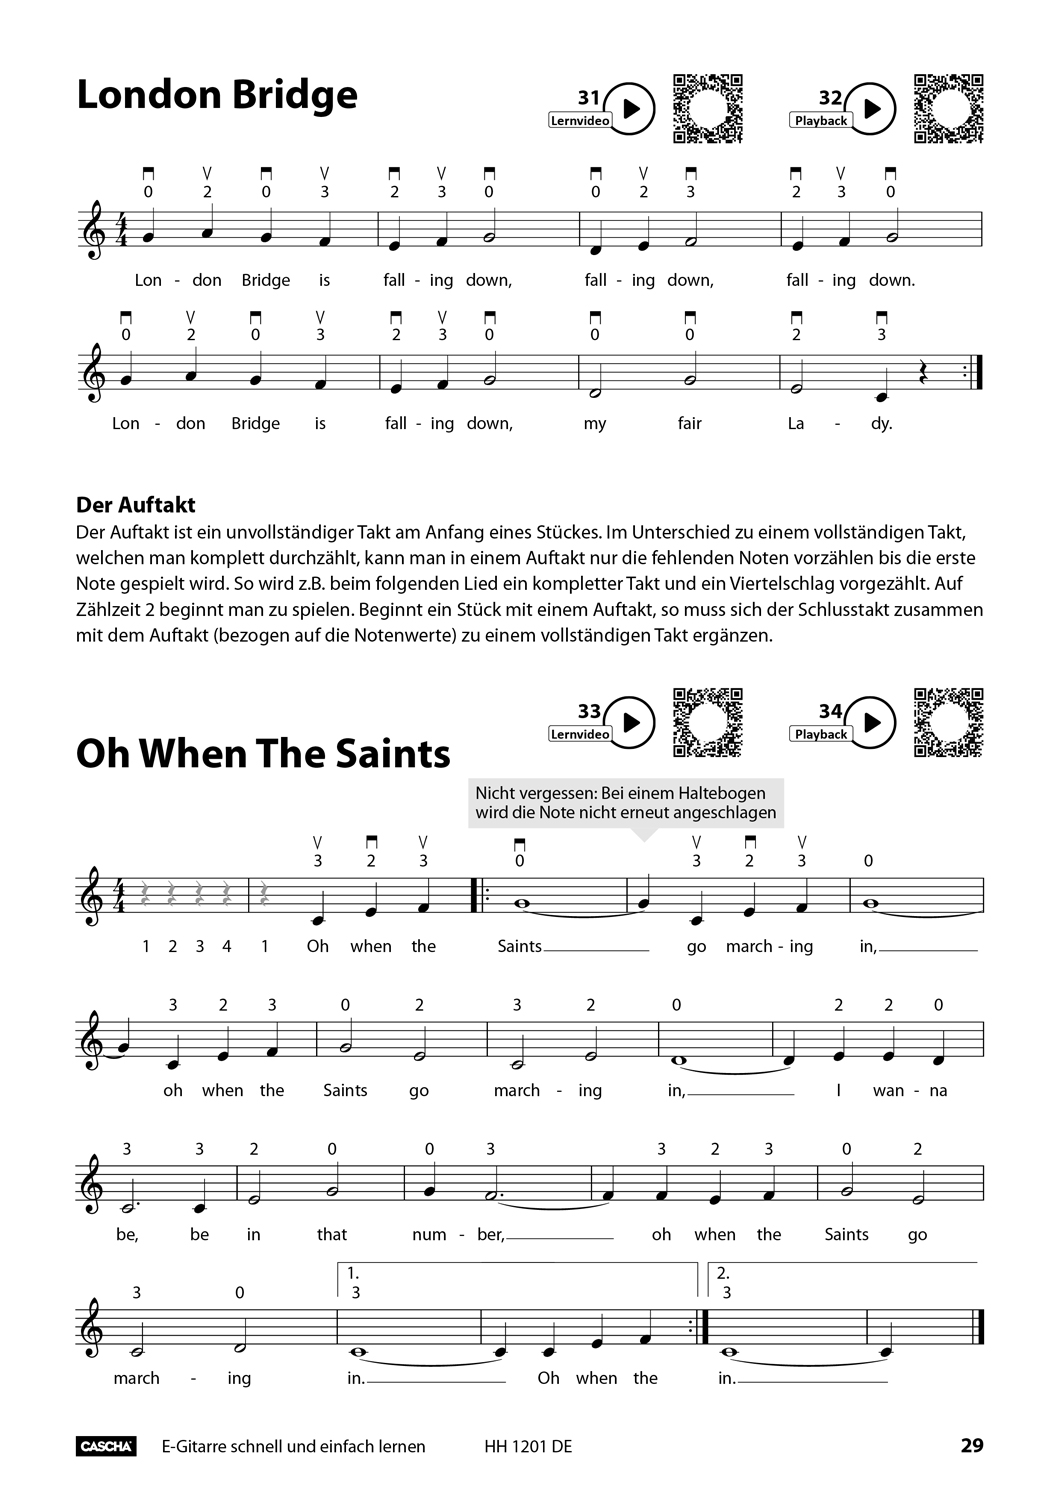 E-Gitarre - Schnell und einfach lernen Seiten 8